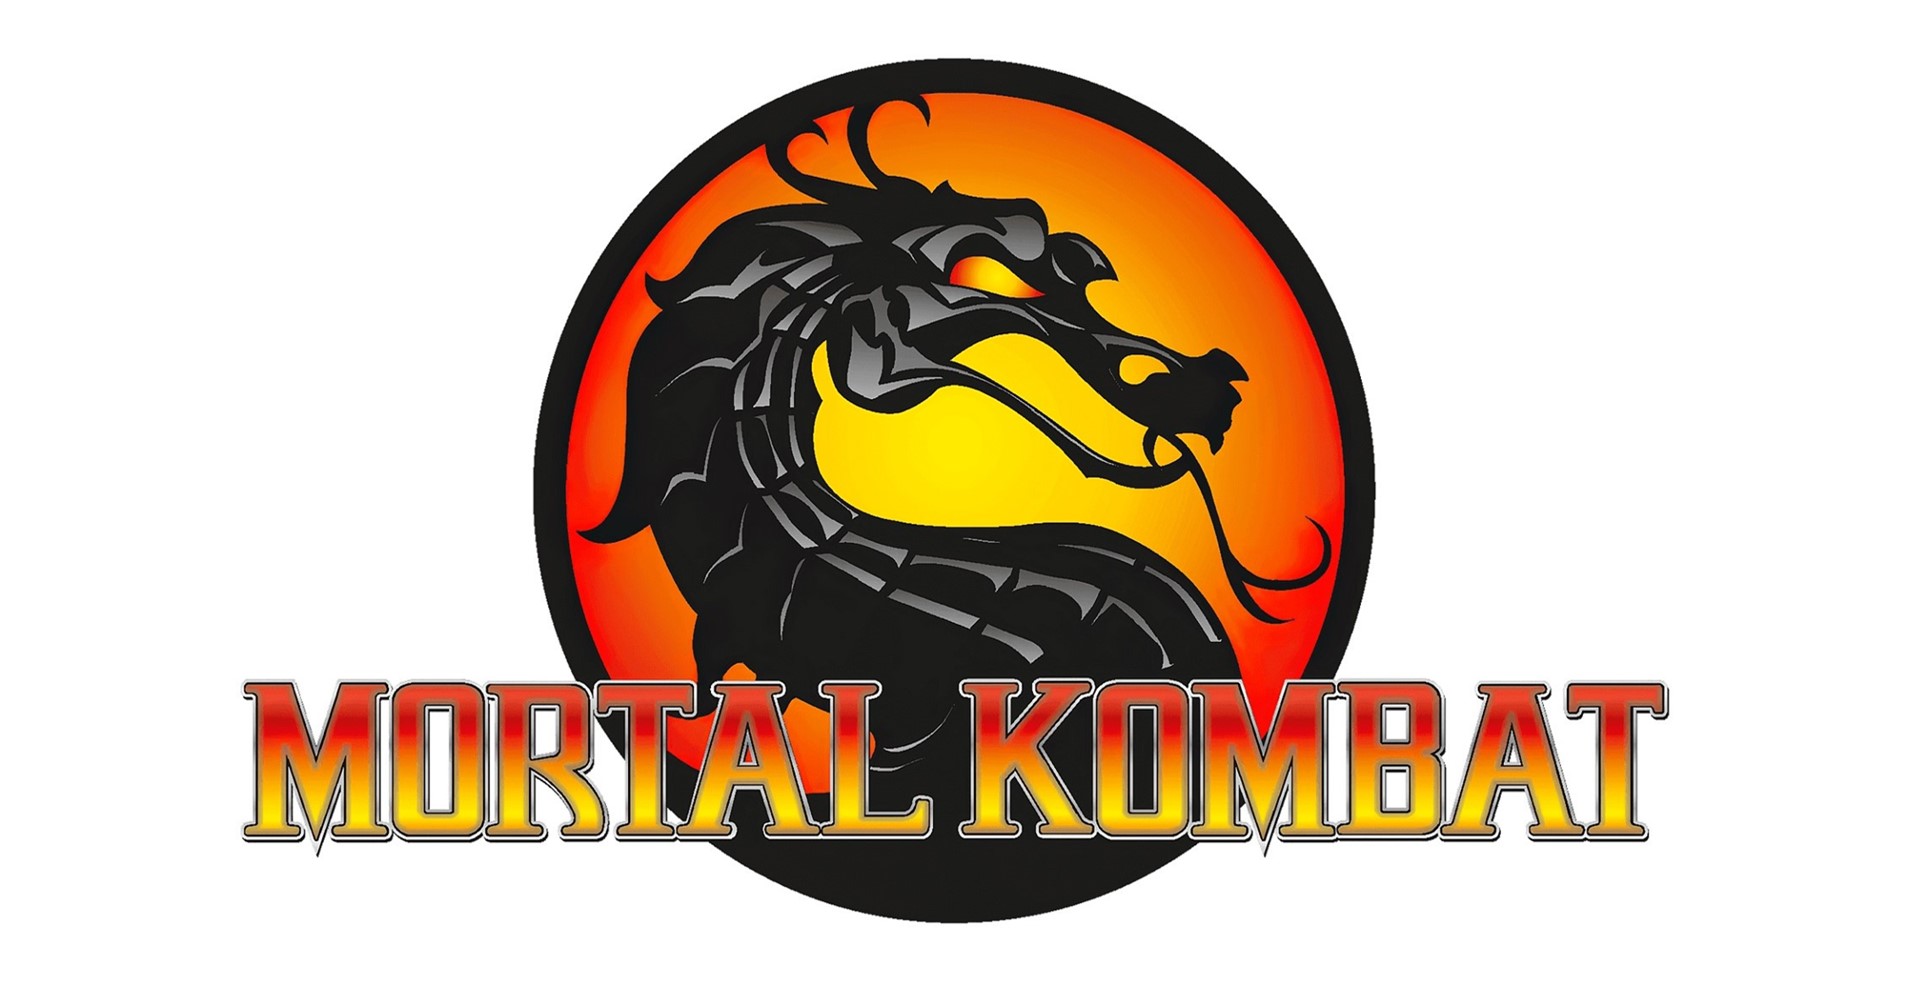 ข่าวลือ Mortal Kombat ภาคต่อไปจะเป็นการรีบูตภาคแรก และมีตัวละครรับเชิญเพียบ